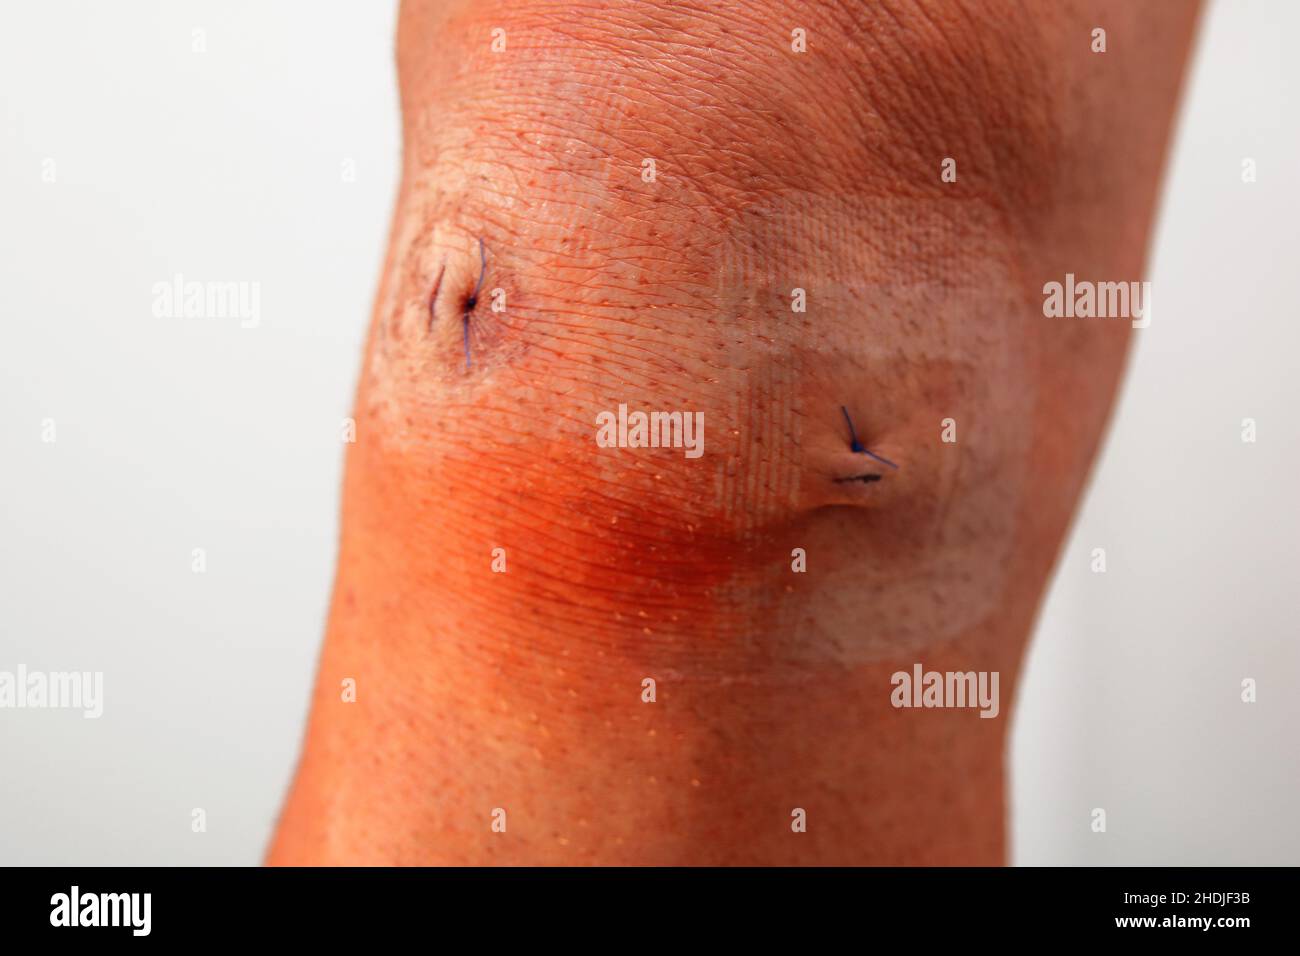 wound, patella, wounds, knee, patellas Stock Photo